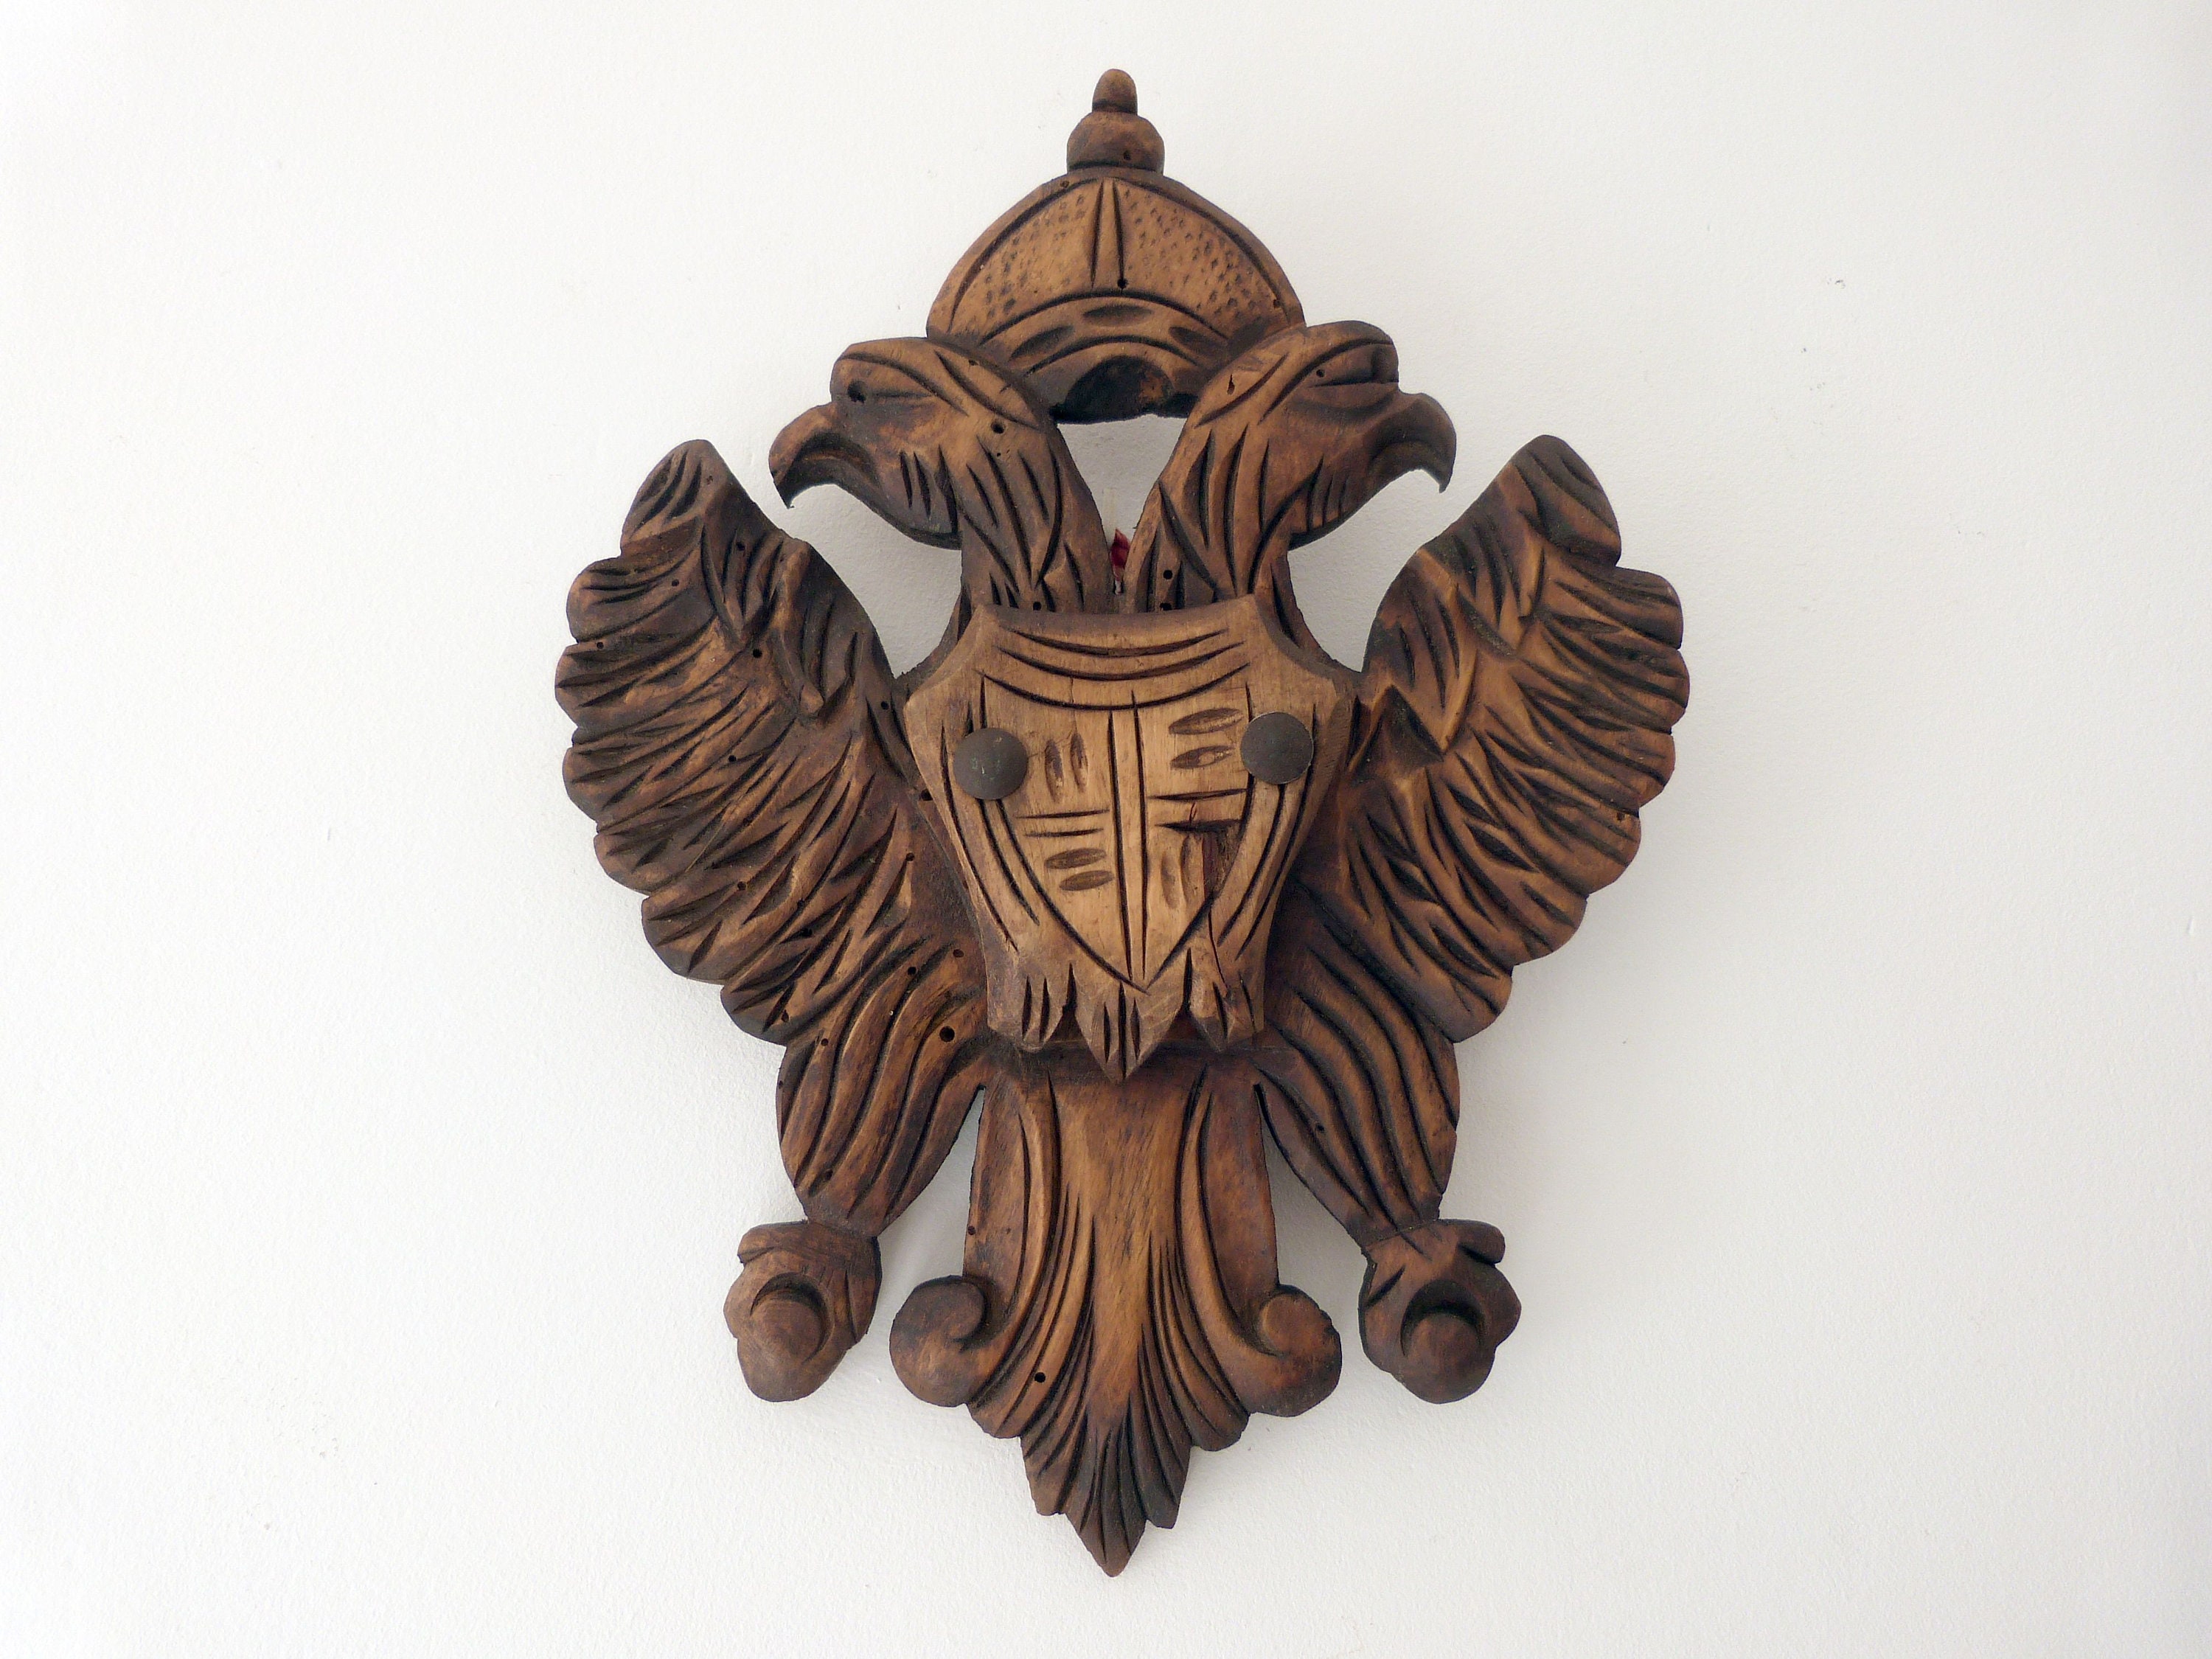 90x150cm Avant Emblème national russe Aigle bilatéral Drapeau russe